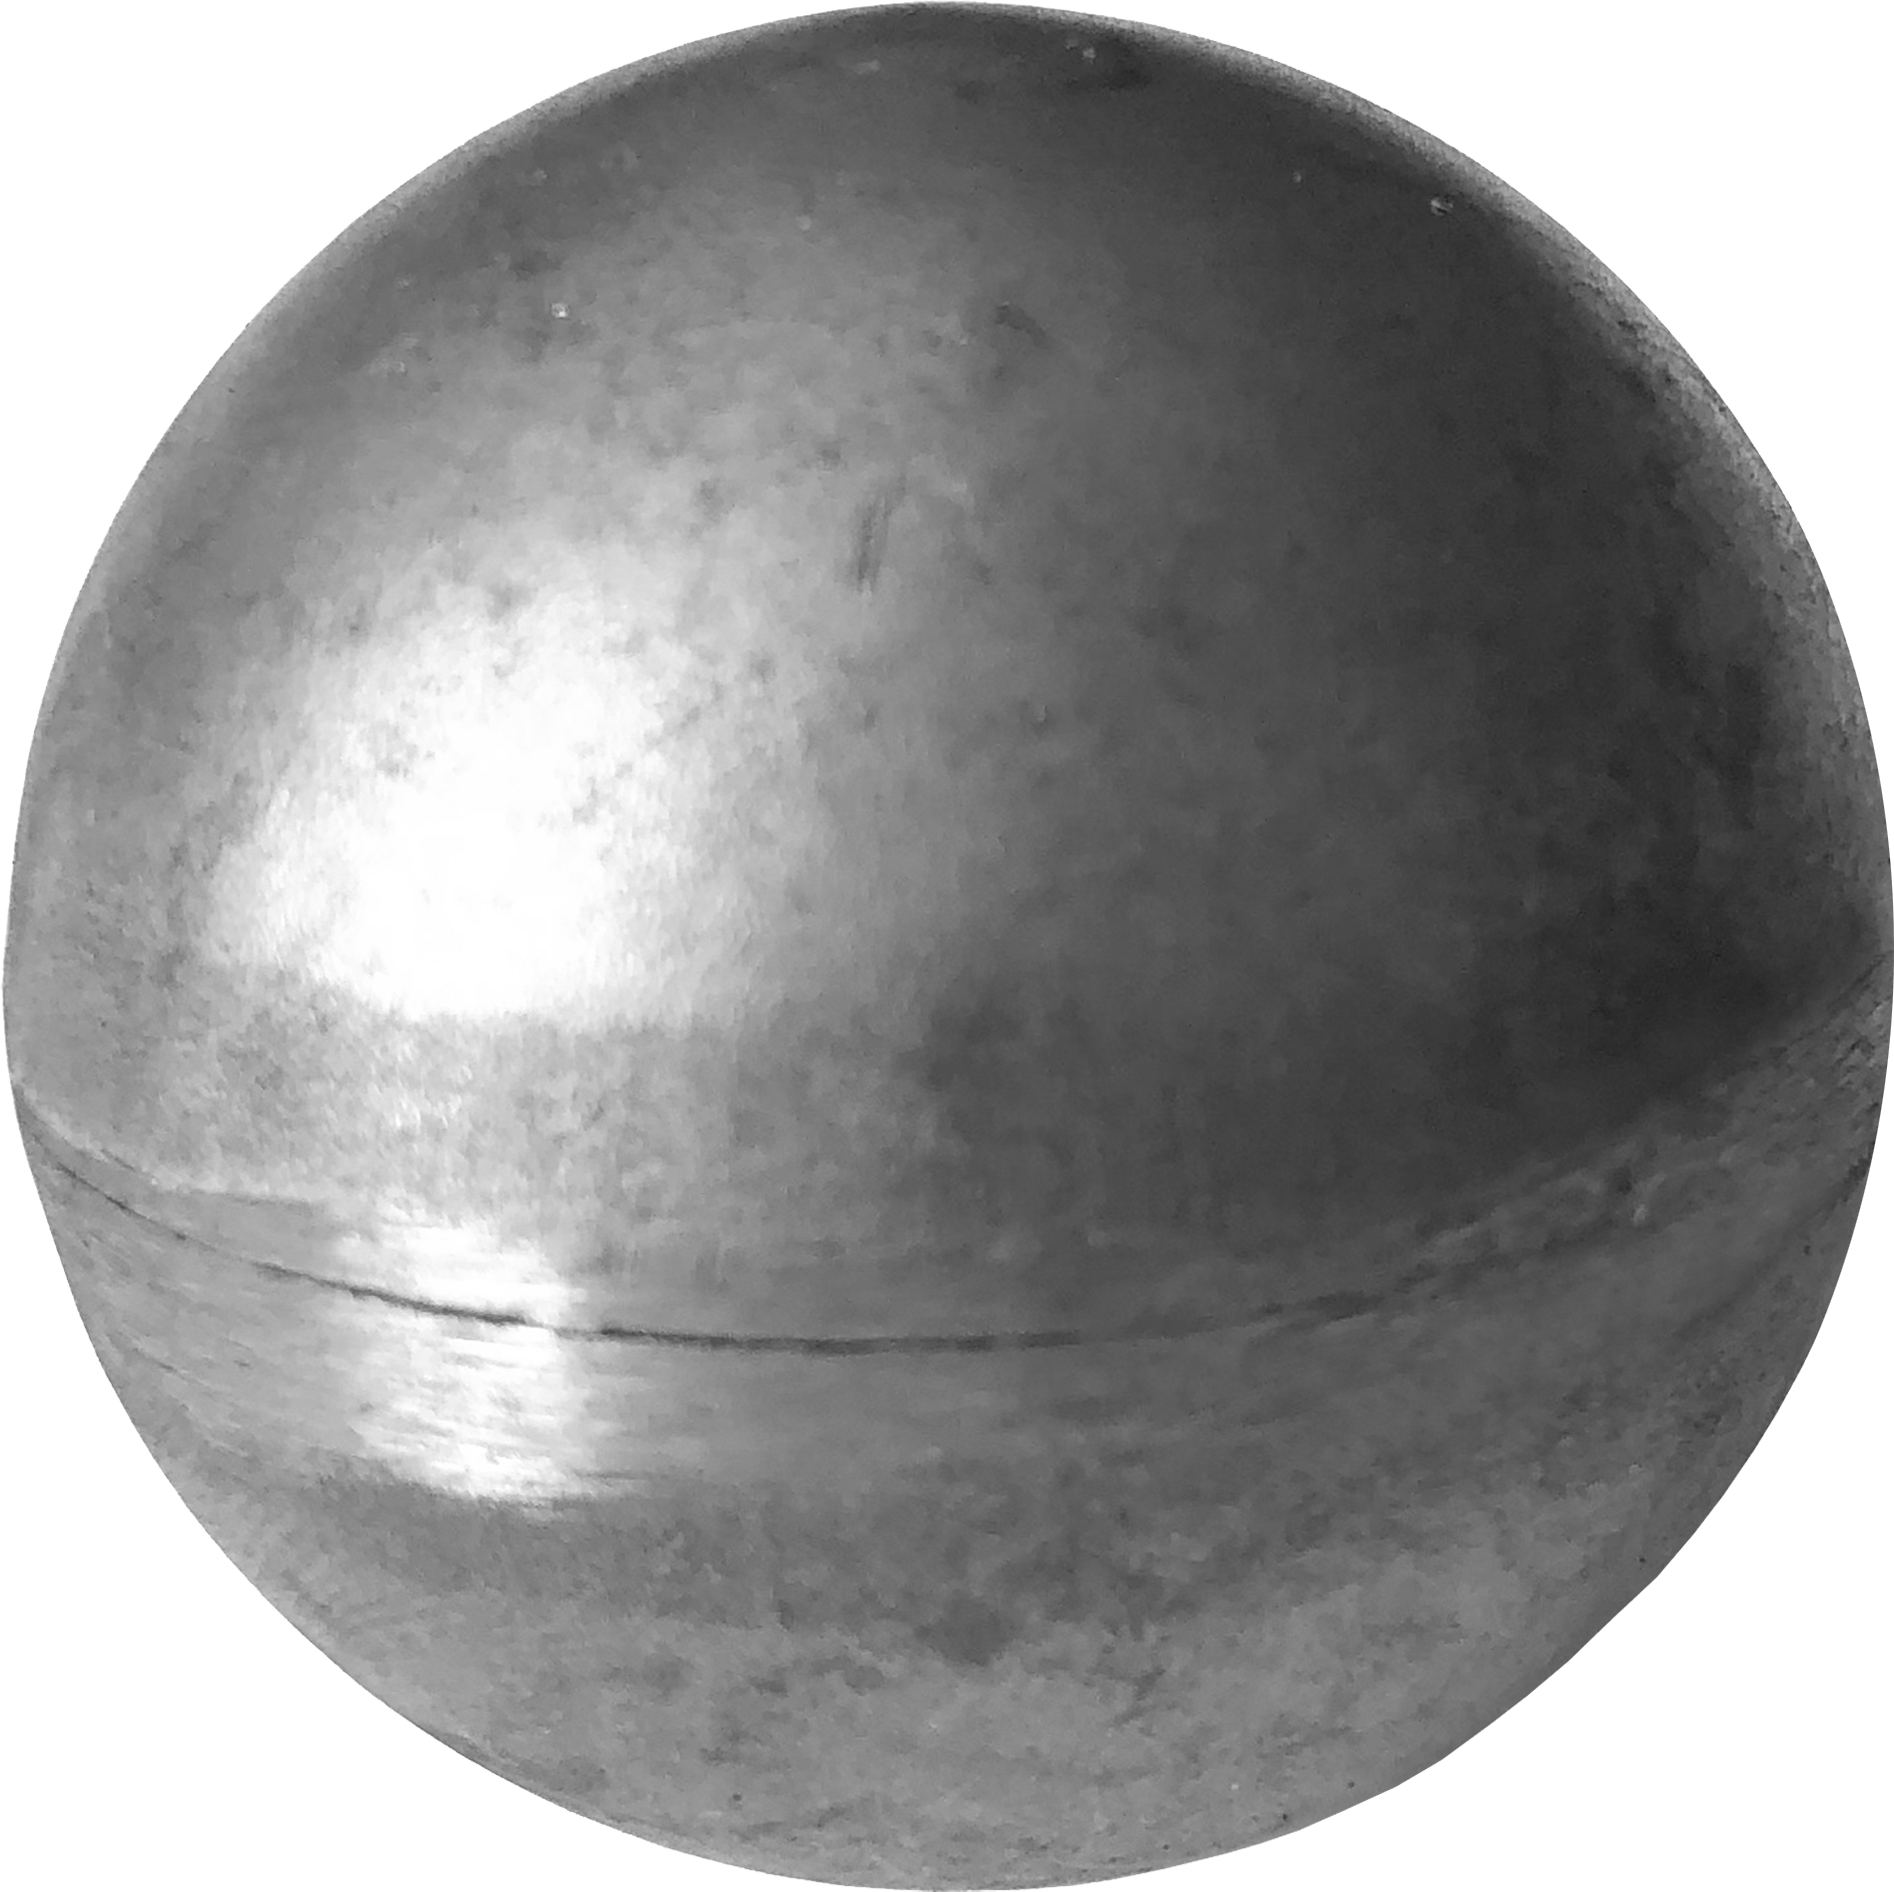 Пустой металлический шар весом 3н. Sk02.40.1 шар пустотелый. Шар полый 60мм 9360т. Шар стальной пустотелый d50мм арт 3150. Sk03.30.1 шар стальной.